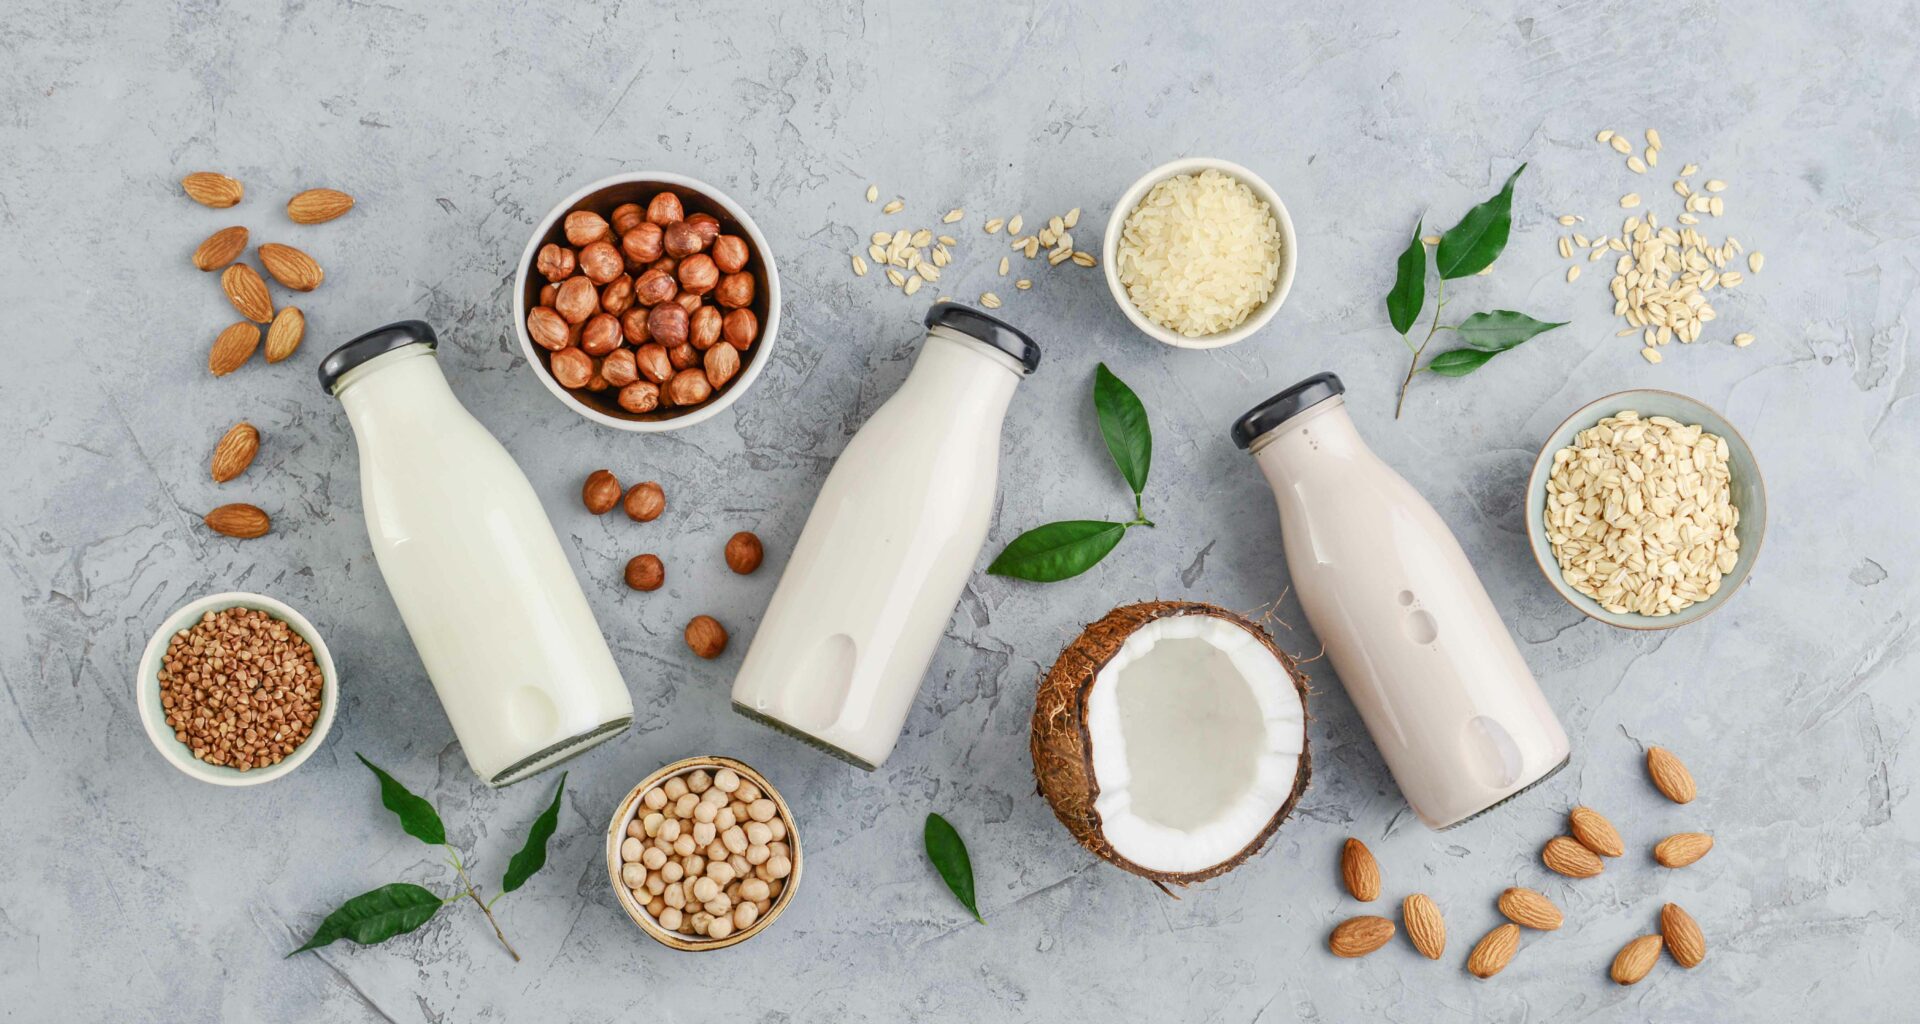 Pourquoi les laits végétaux bio ne sont plus enrichis en calcium